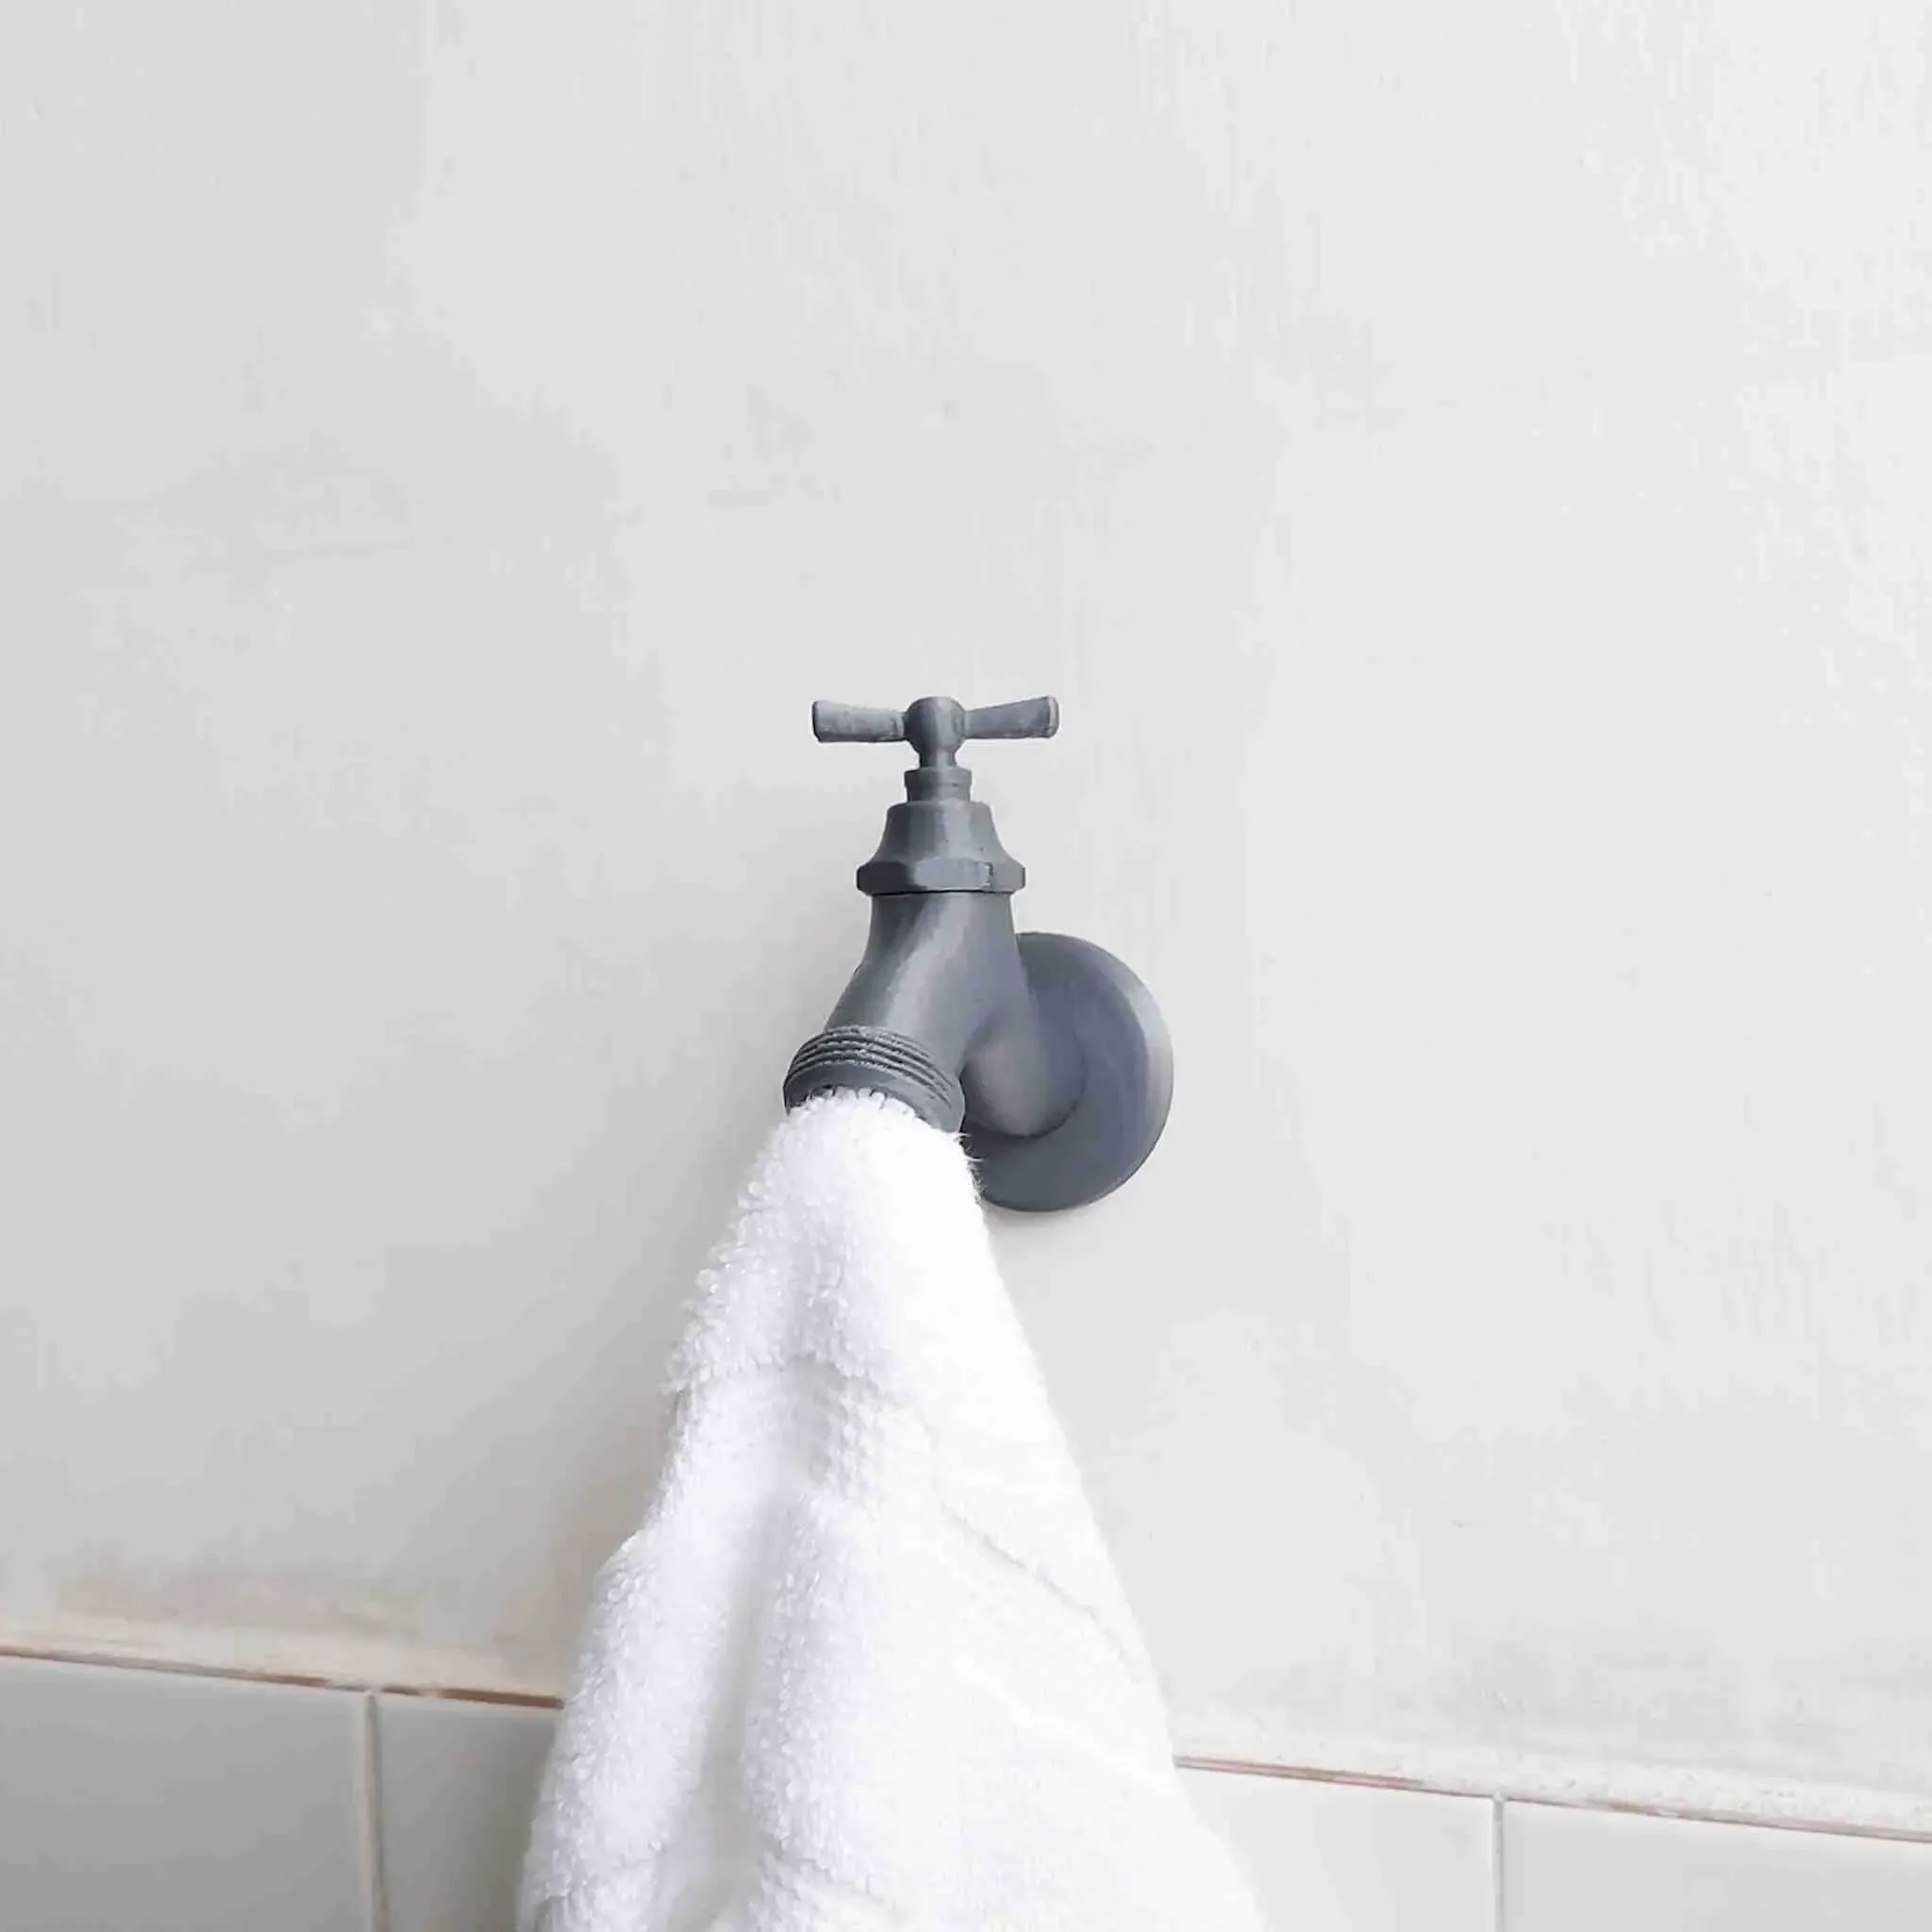 Faucet Towel Hanger